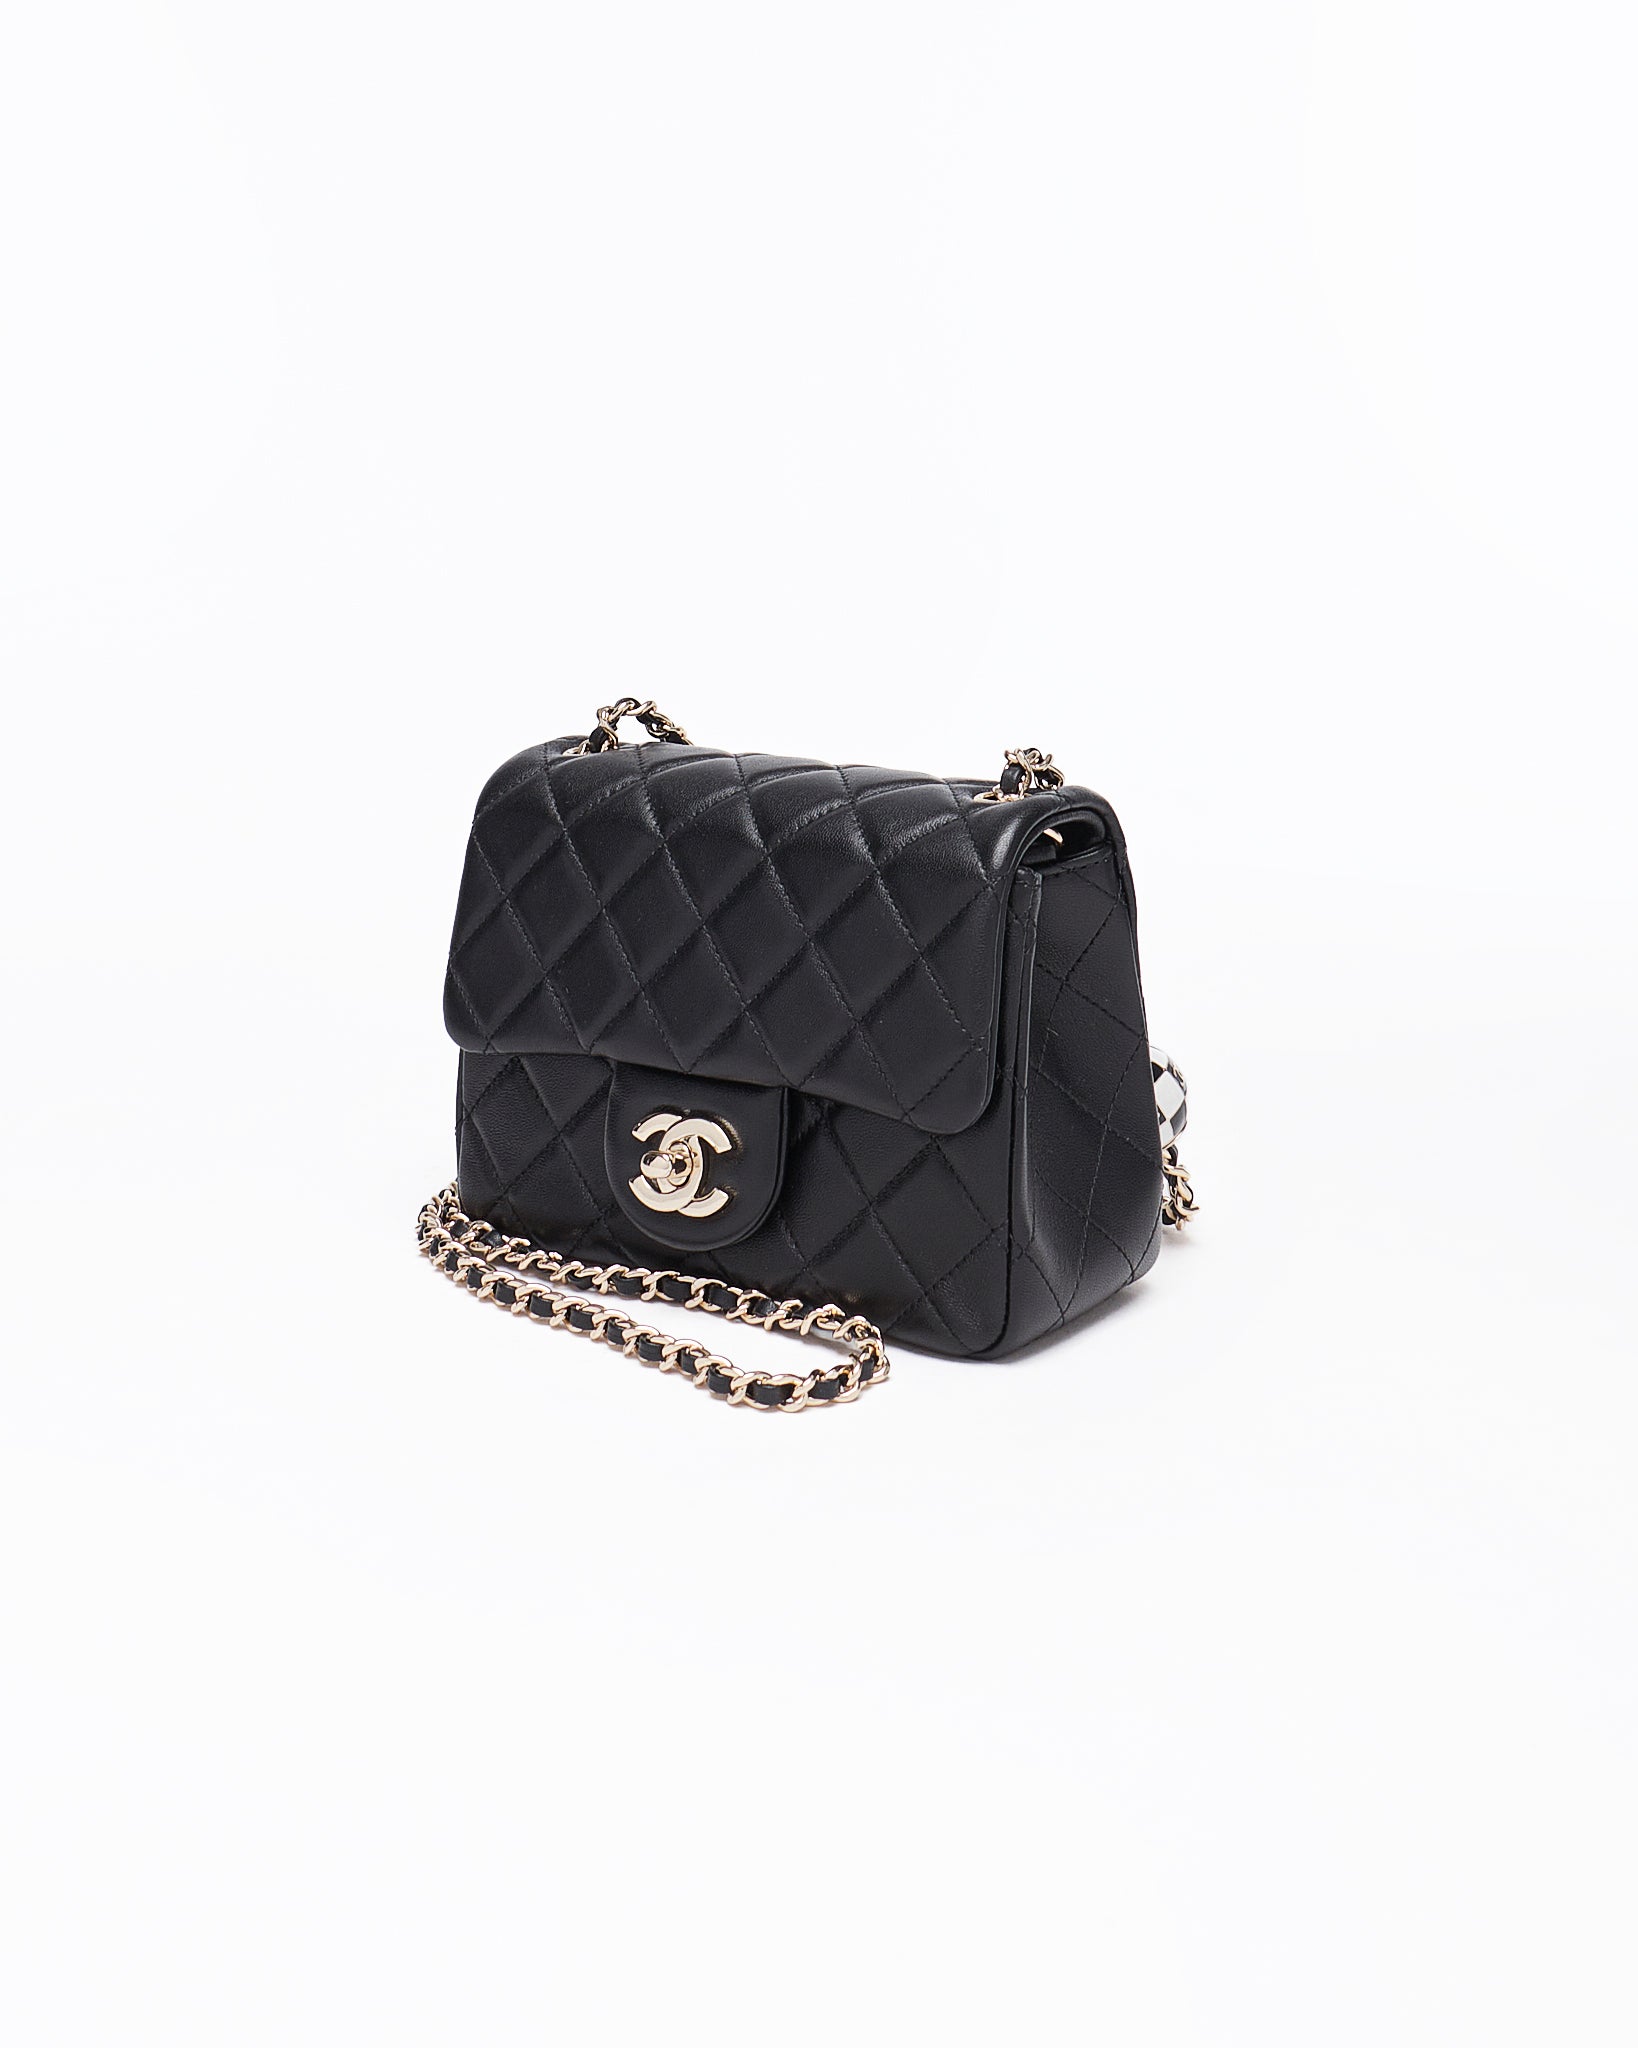 CHA Small Classic Flap Lady Black Bag 229